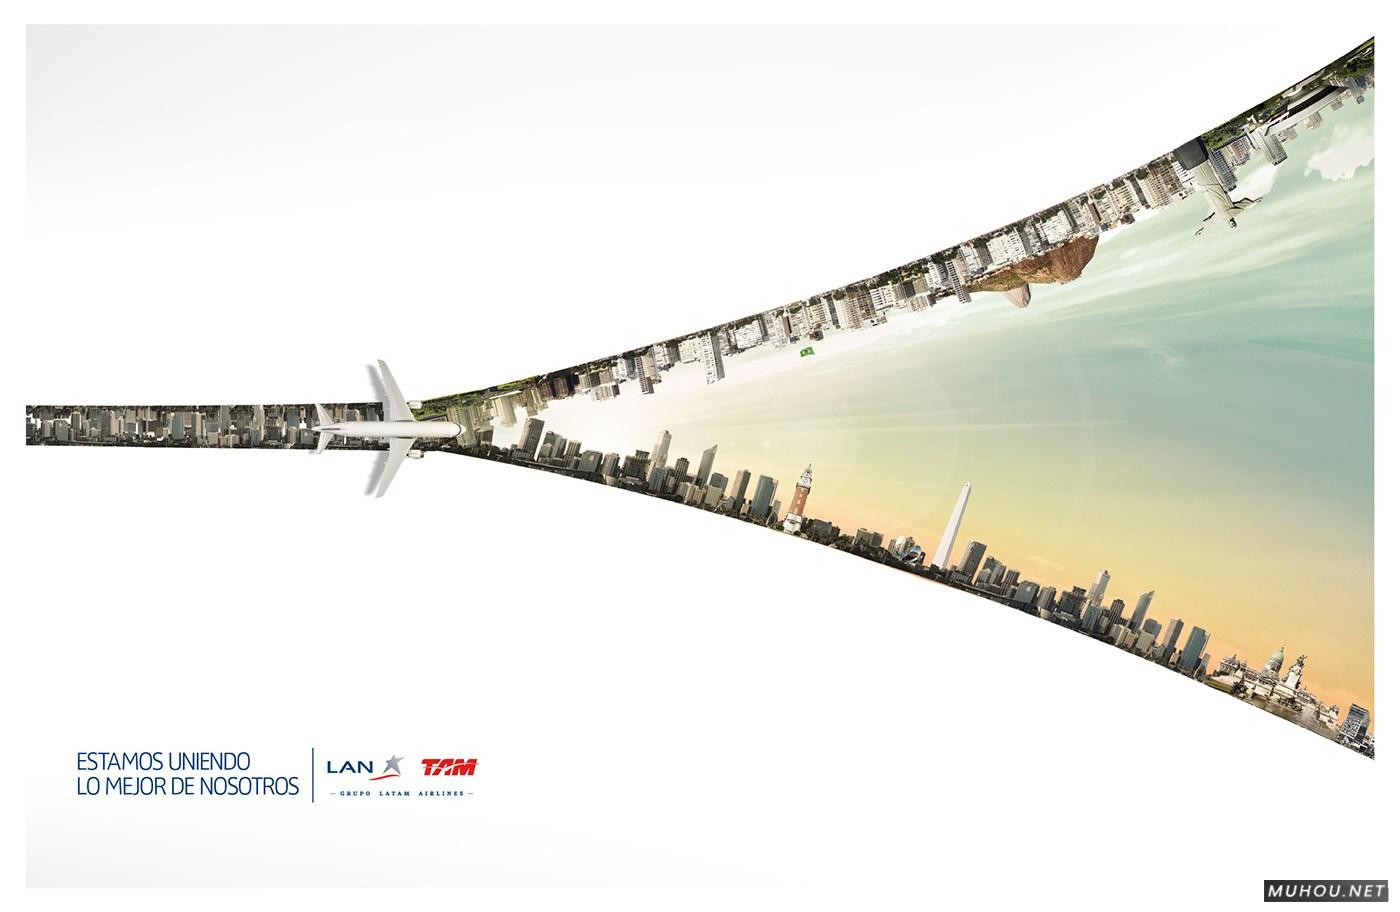 LAN-TAM航空公司拉近城市间的距离拉链创意广告设计 [6P]